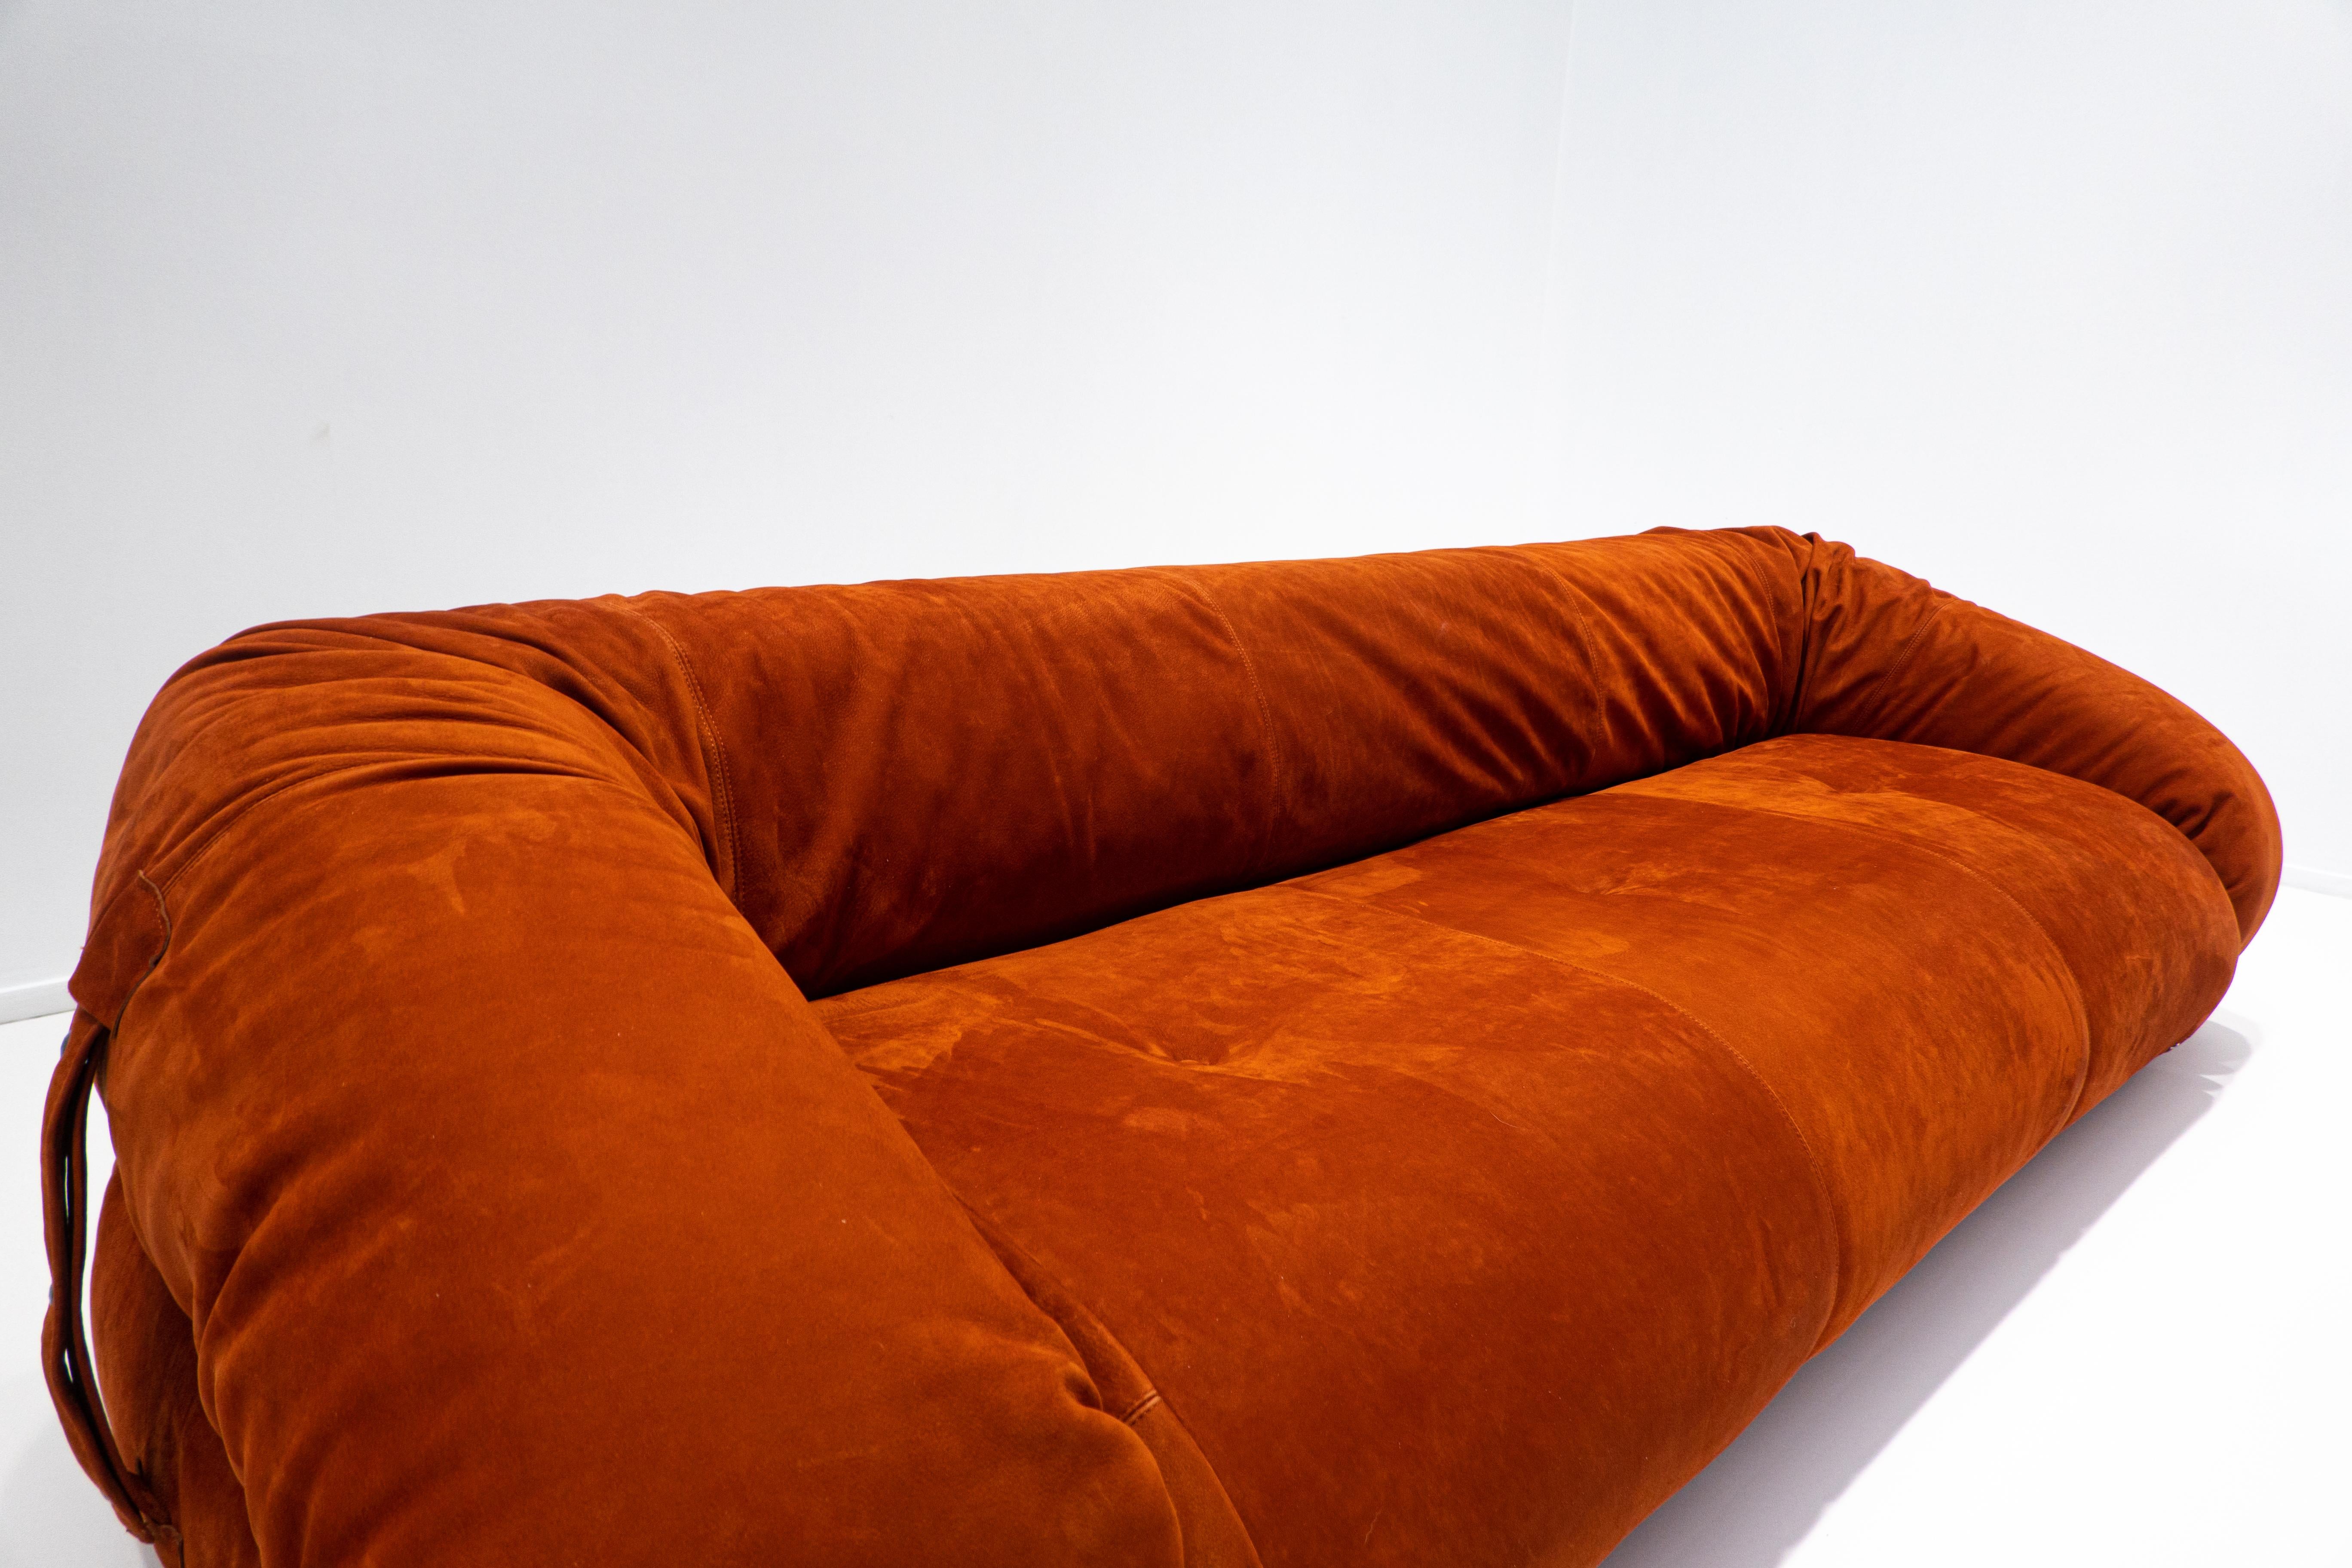 Italian Anfibio Sofa Bed by Alessandro Becchi for Giovannetti Collezioni, Orange, 1970s